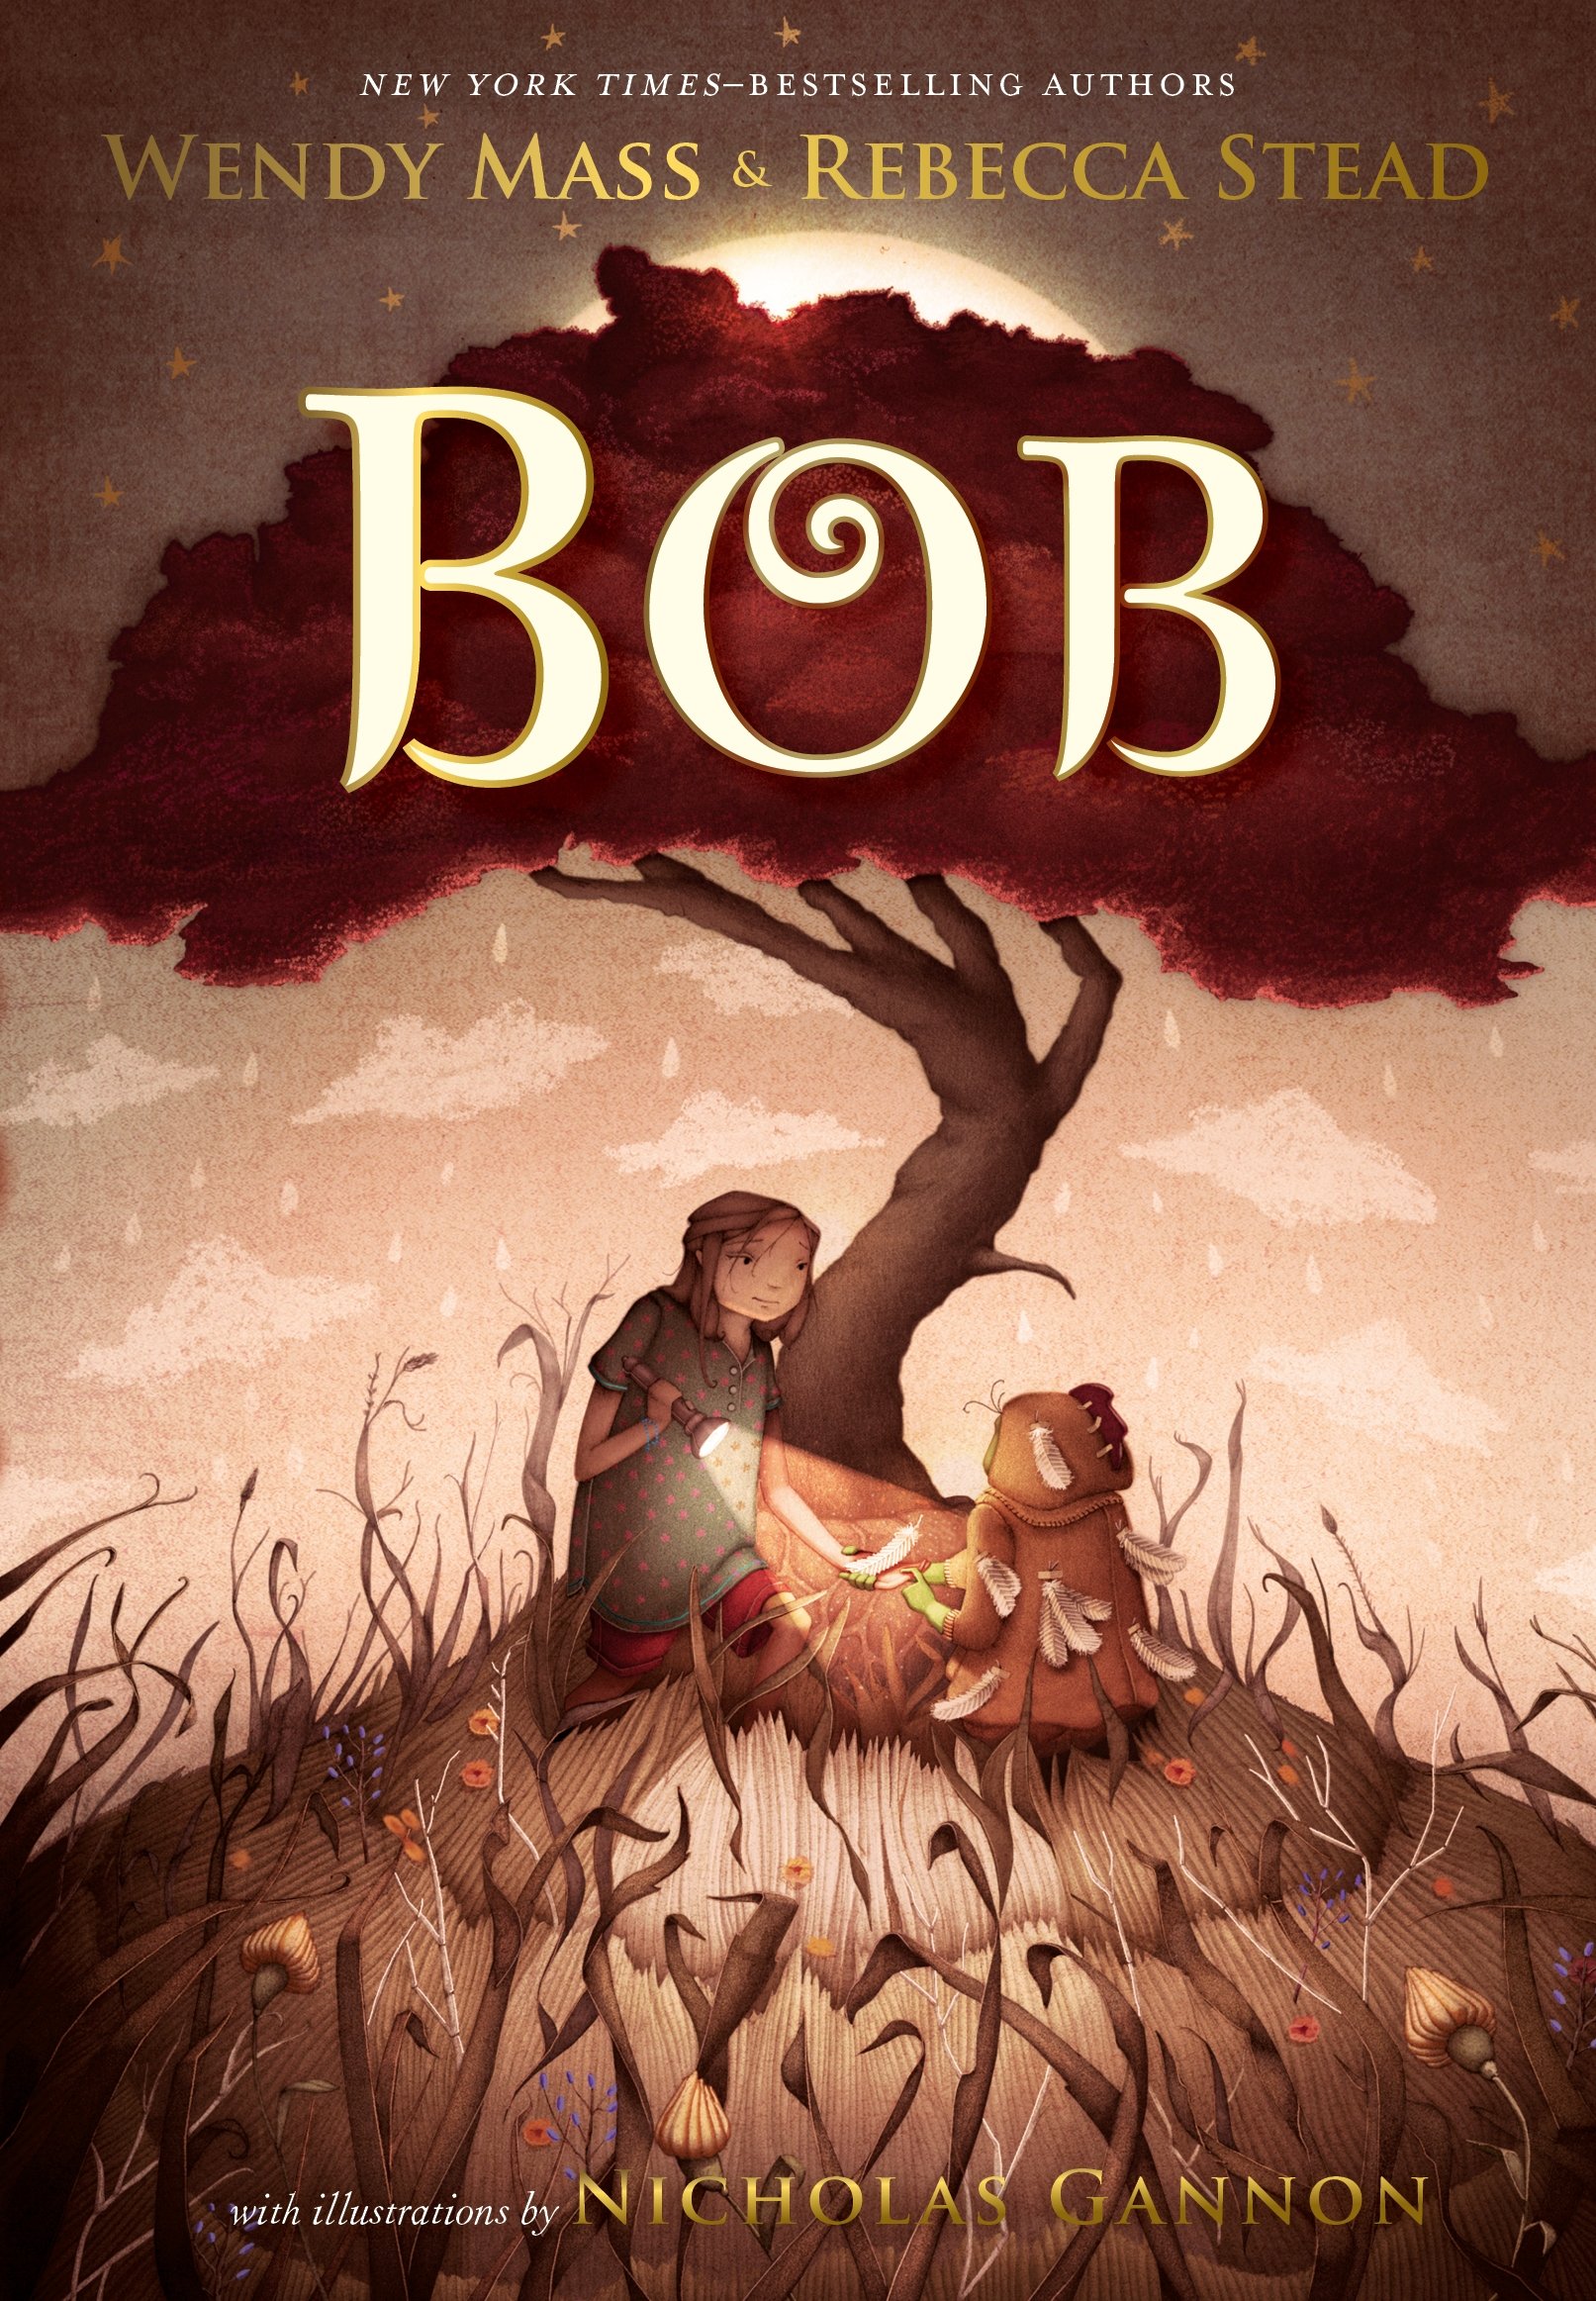 Bob by Rebecca Stead et al